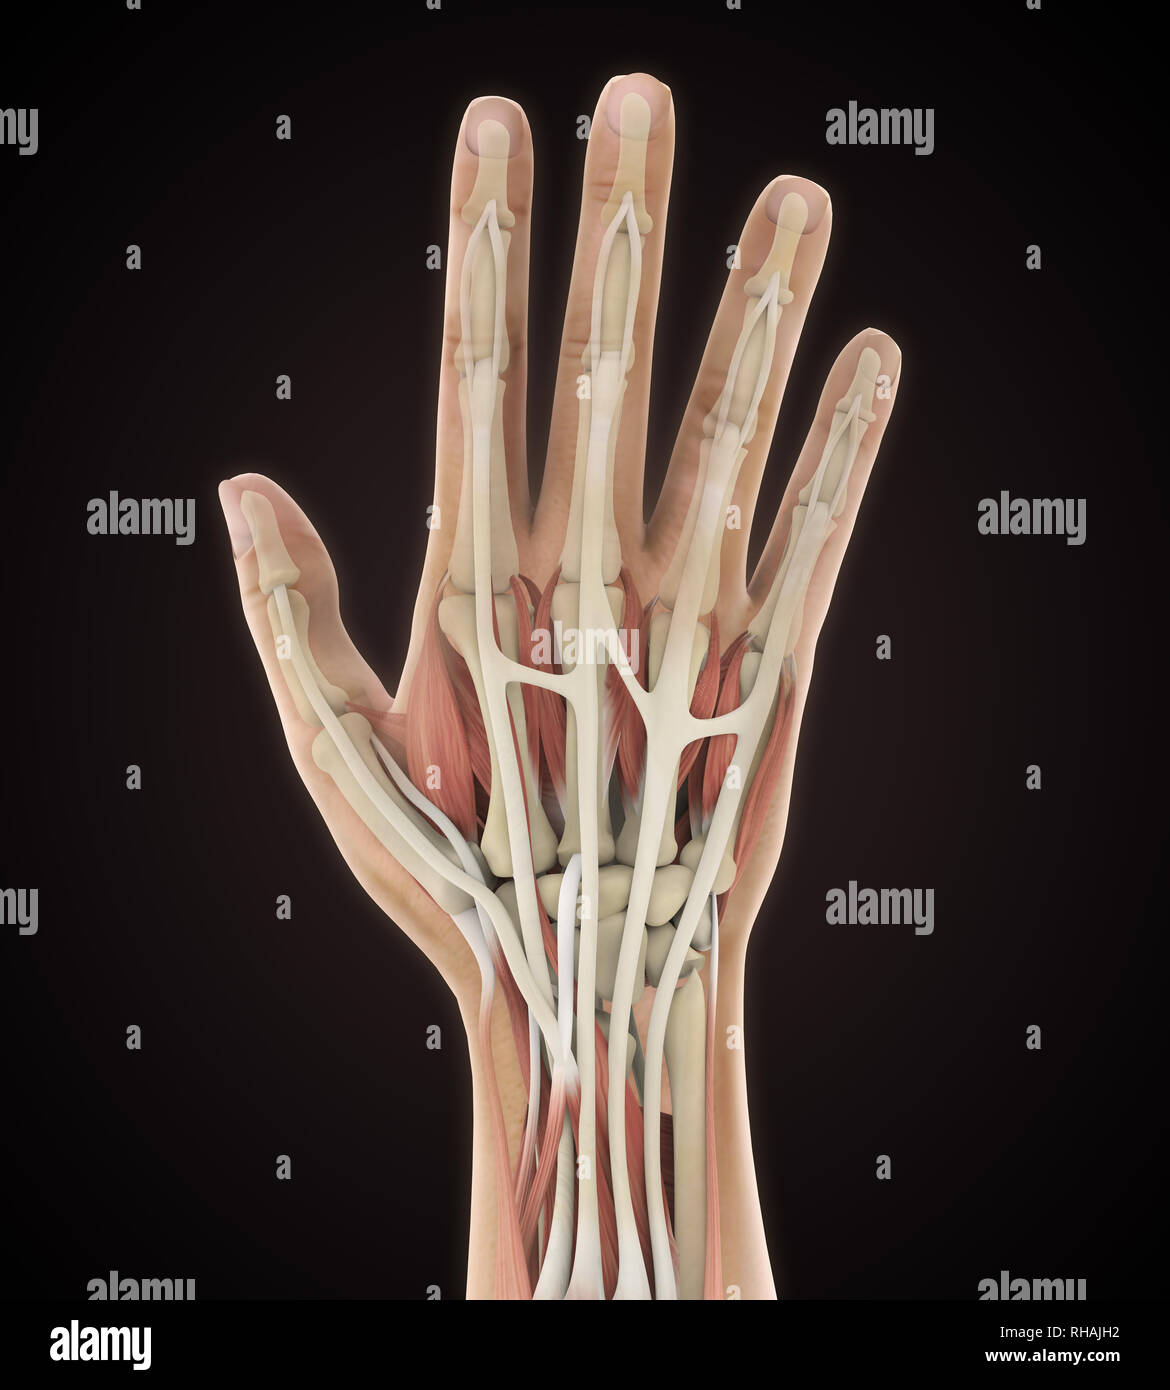 La main de l'illustration anatomique Banque D'Images